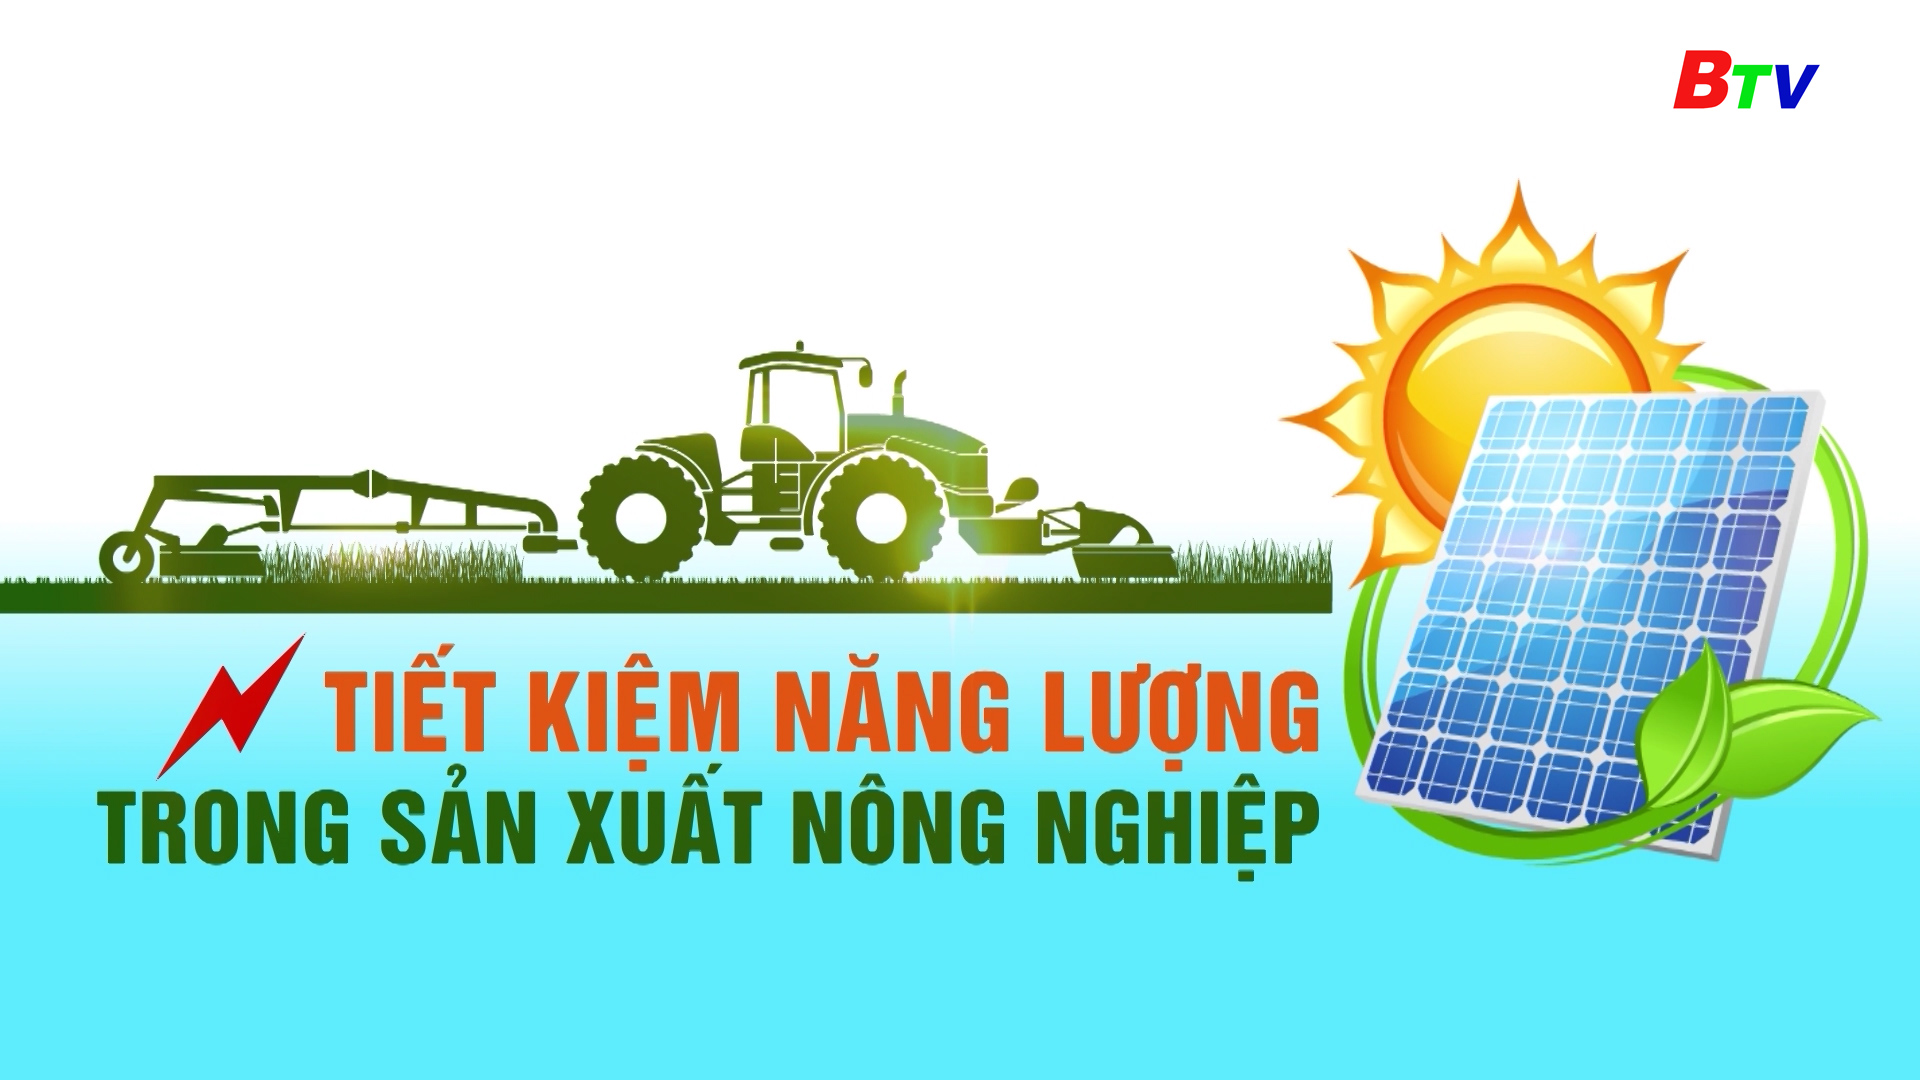 Tiết kiệm năng lượng trong sản xuất nông nghiệp